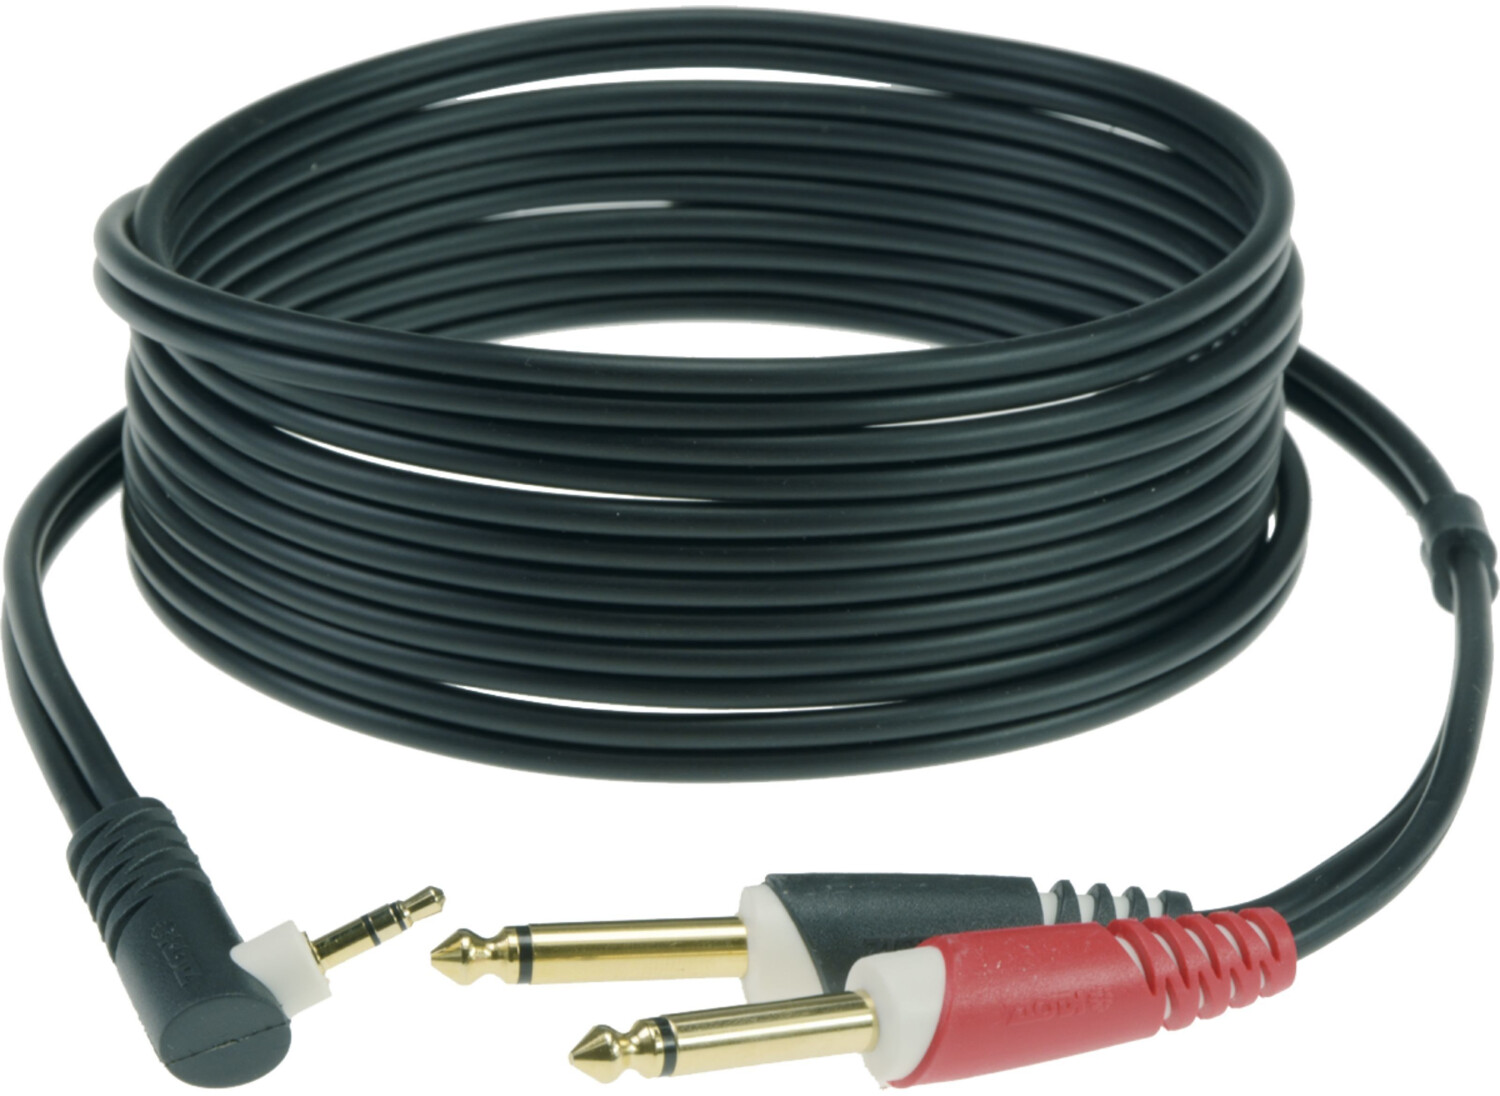 Photos - Cable (video, audio, USB) Klotz a-i-s Klotz AY5A0300 Y-Adapterkabel Klinke 3m 3,5mm Winkelklinke